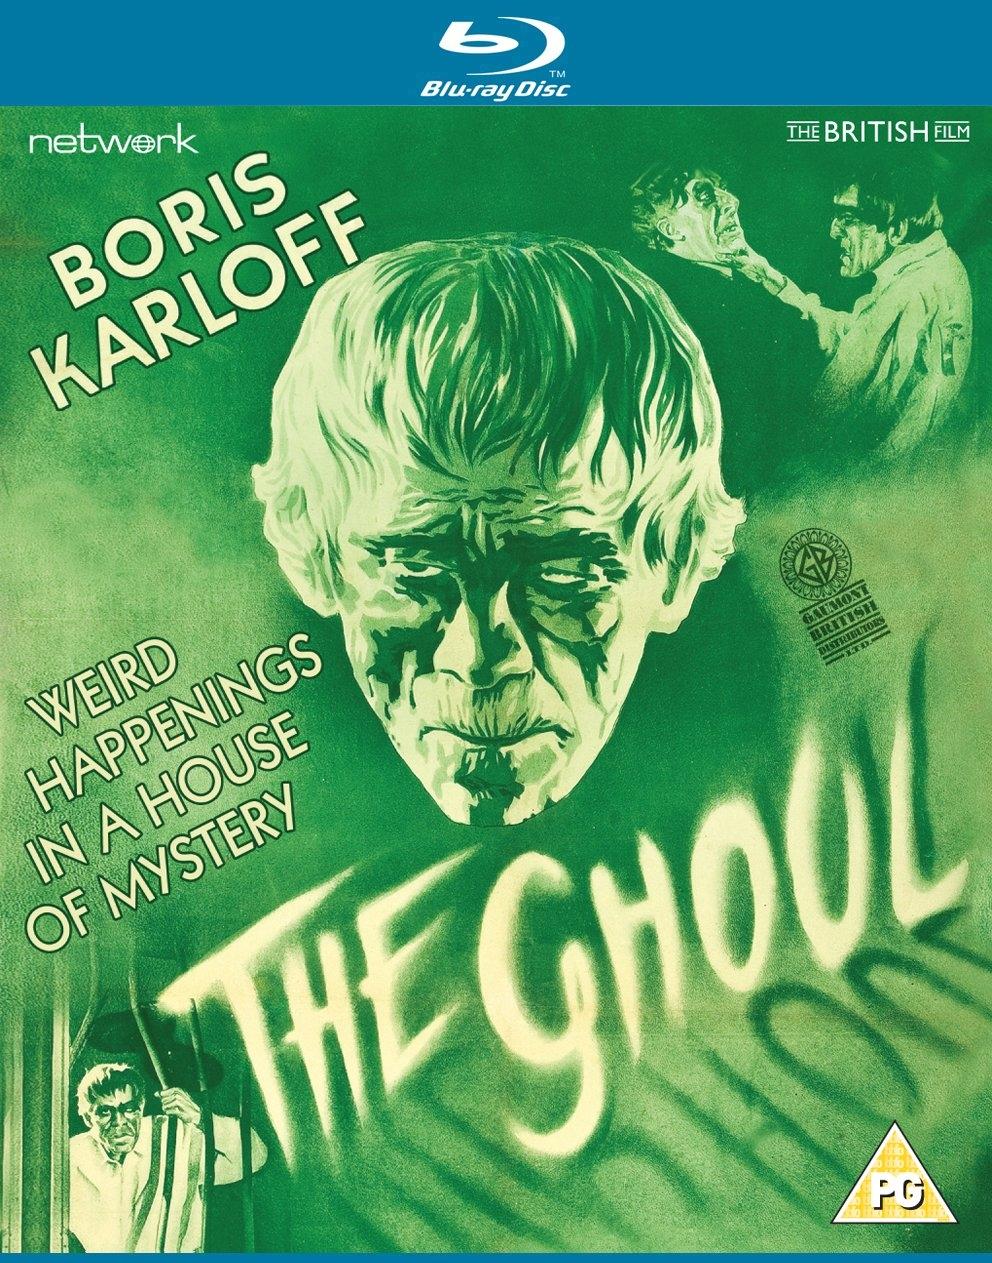 《THE GHOUL》同名电影，由恐怖巨星Boris Karloff主演。